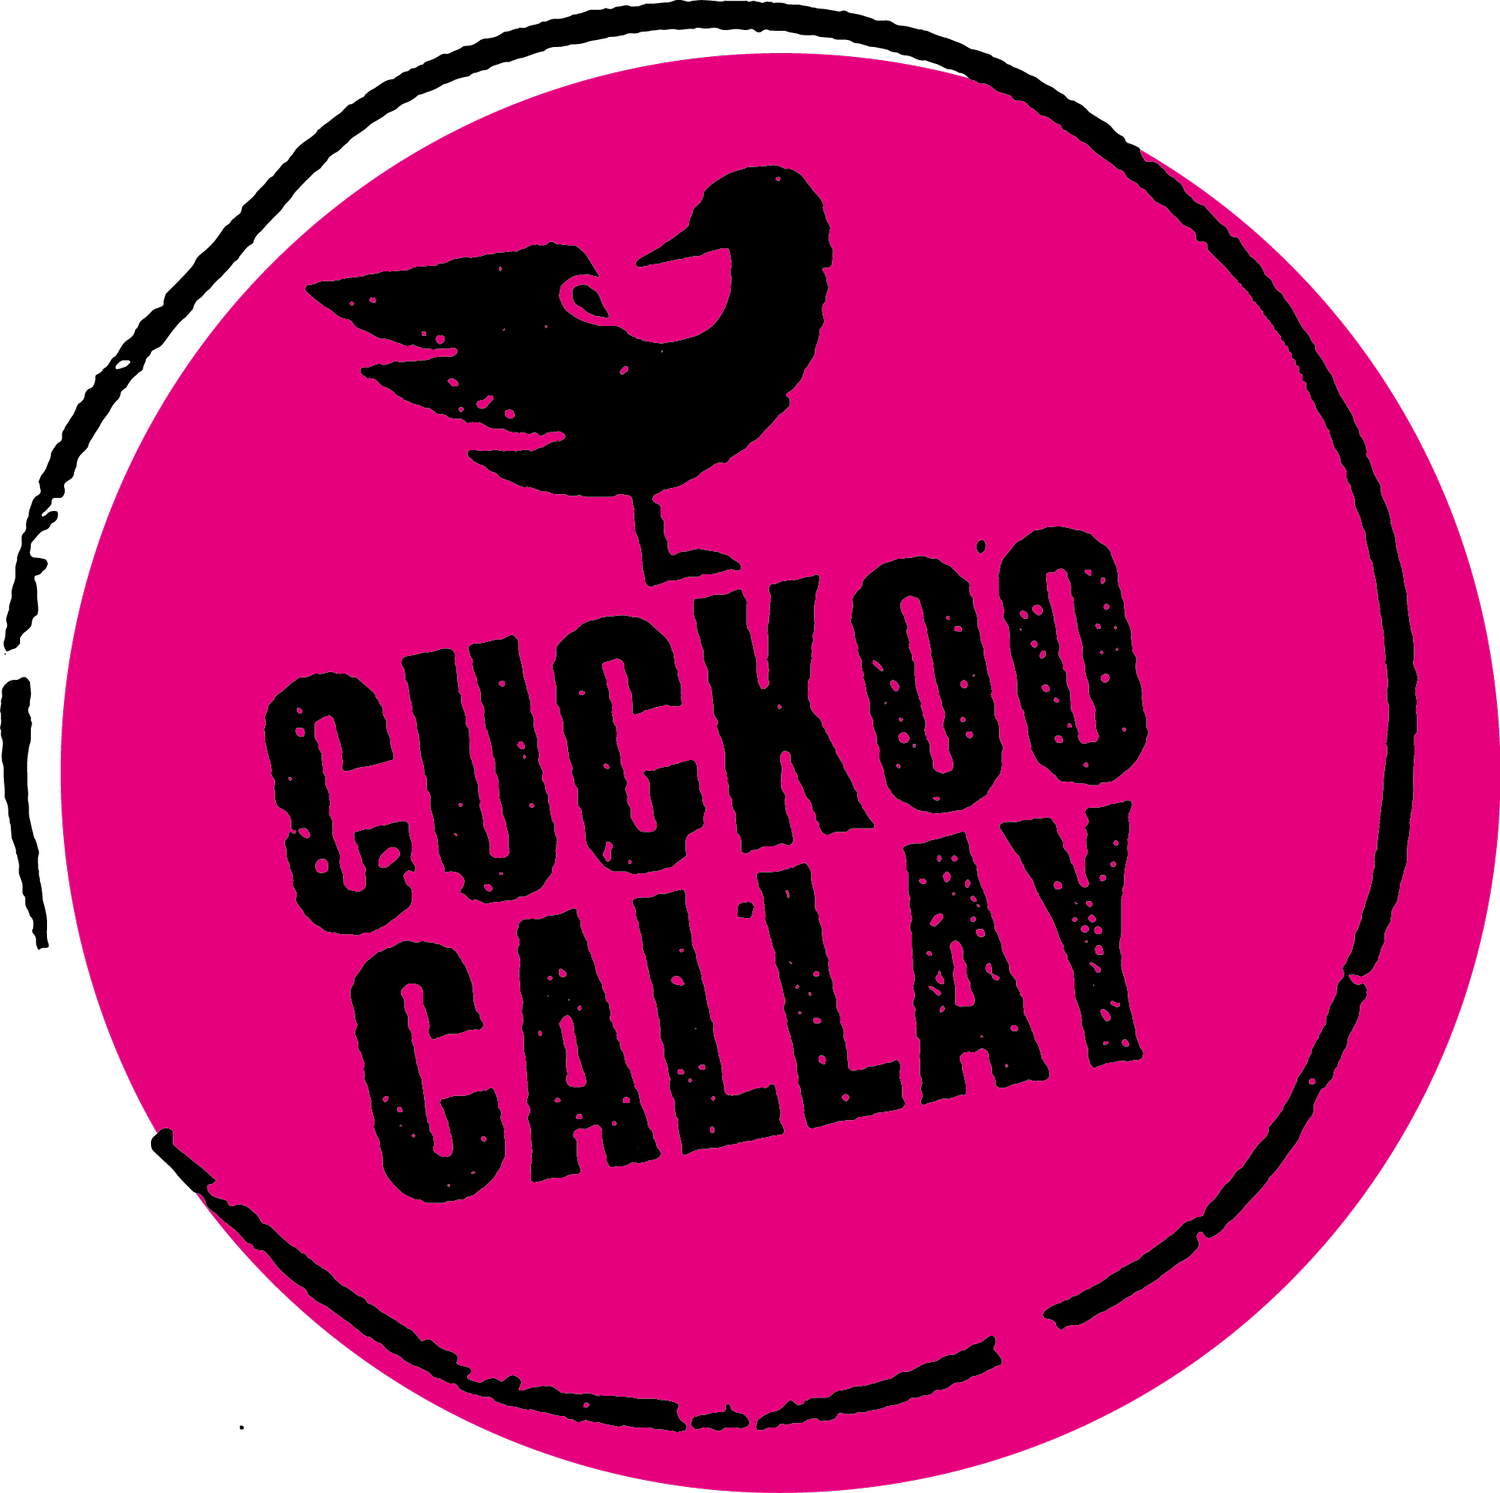 Cuckoo Callay